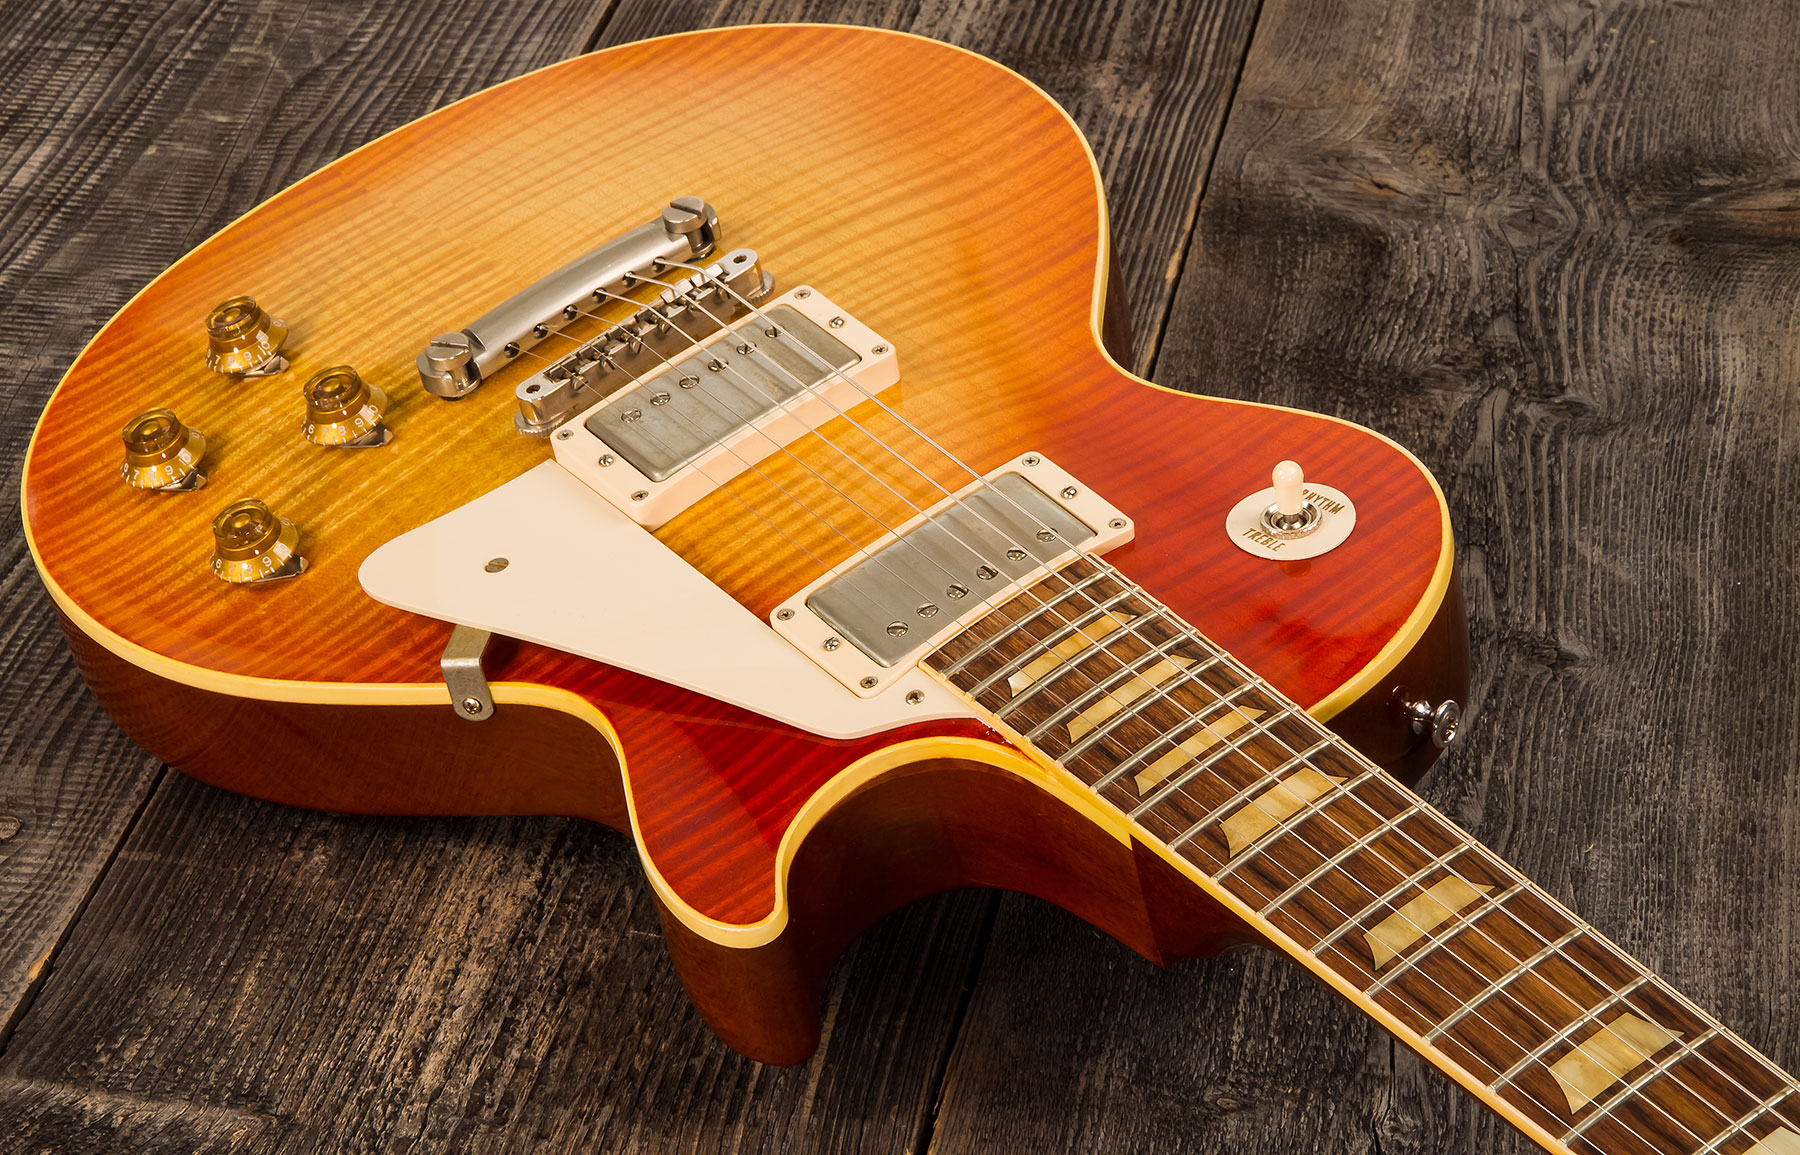 Gibson Custom Shop Les Paul Les Paul 1959 Southern Rock Tribute 2h Rw #srt0021 - Vos Reverse Burst - Single cut electric guitar - Variation 1